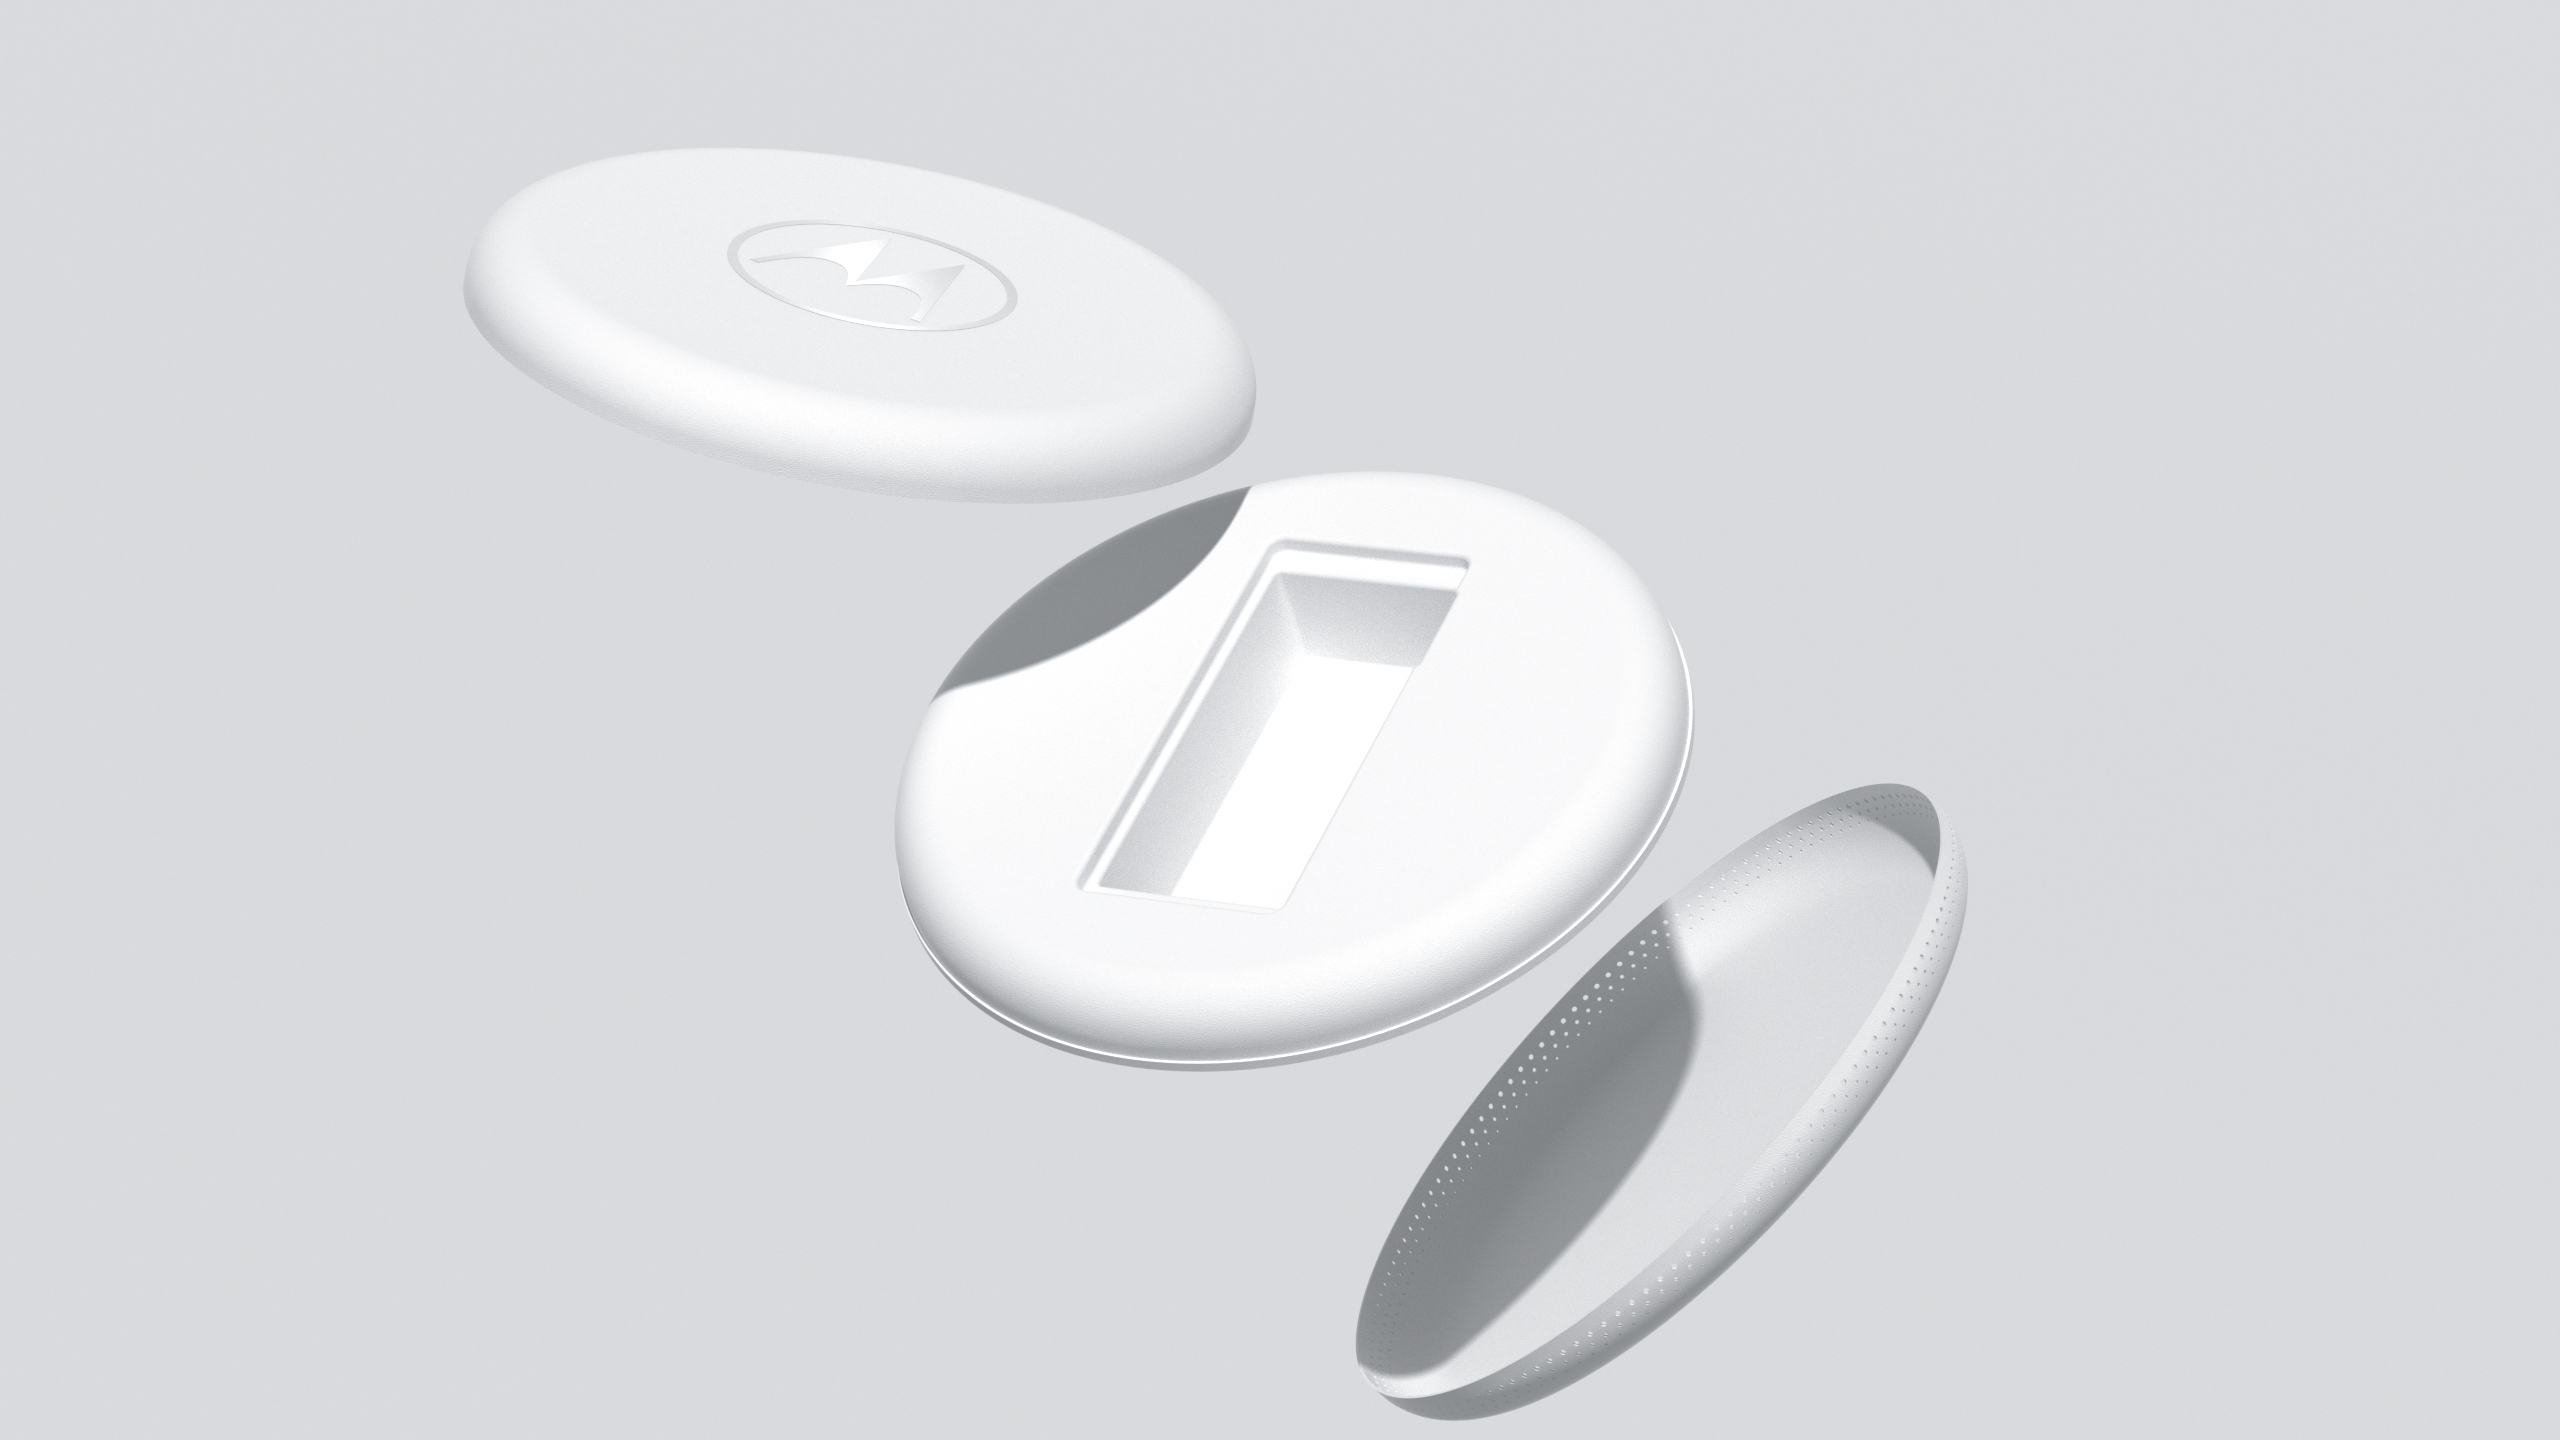 Motorola Phone Packaging - Frisbee and Loudspeaker